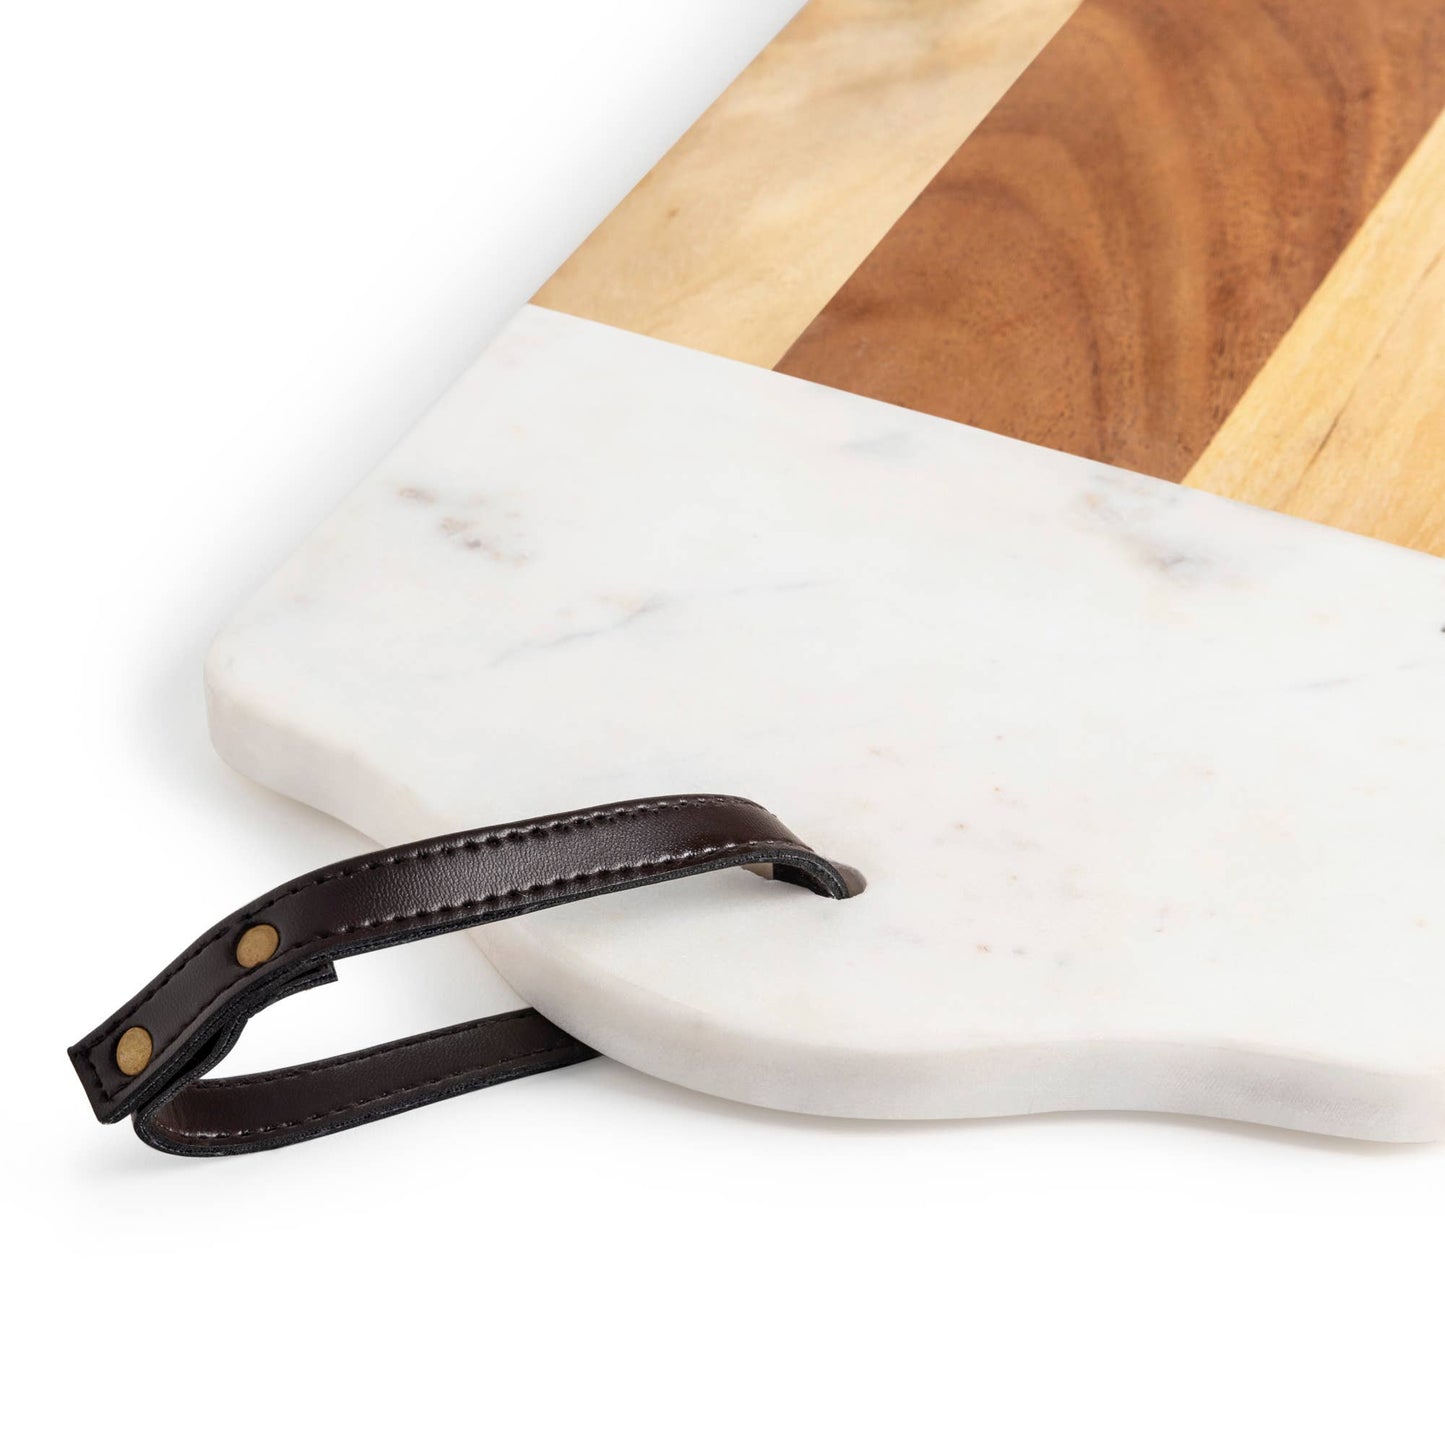 GAURI KOHLI - Darvaza Marble & Wood Cutting Board